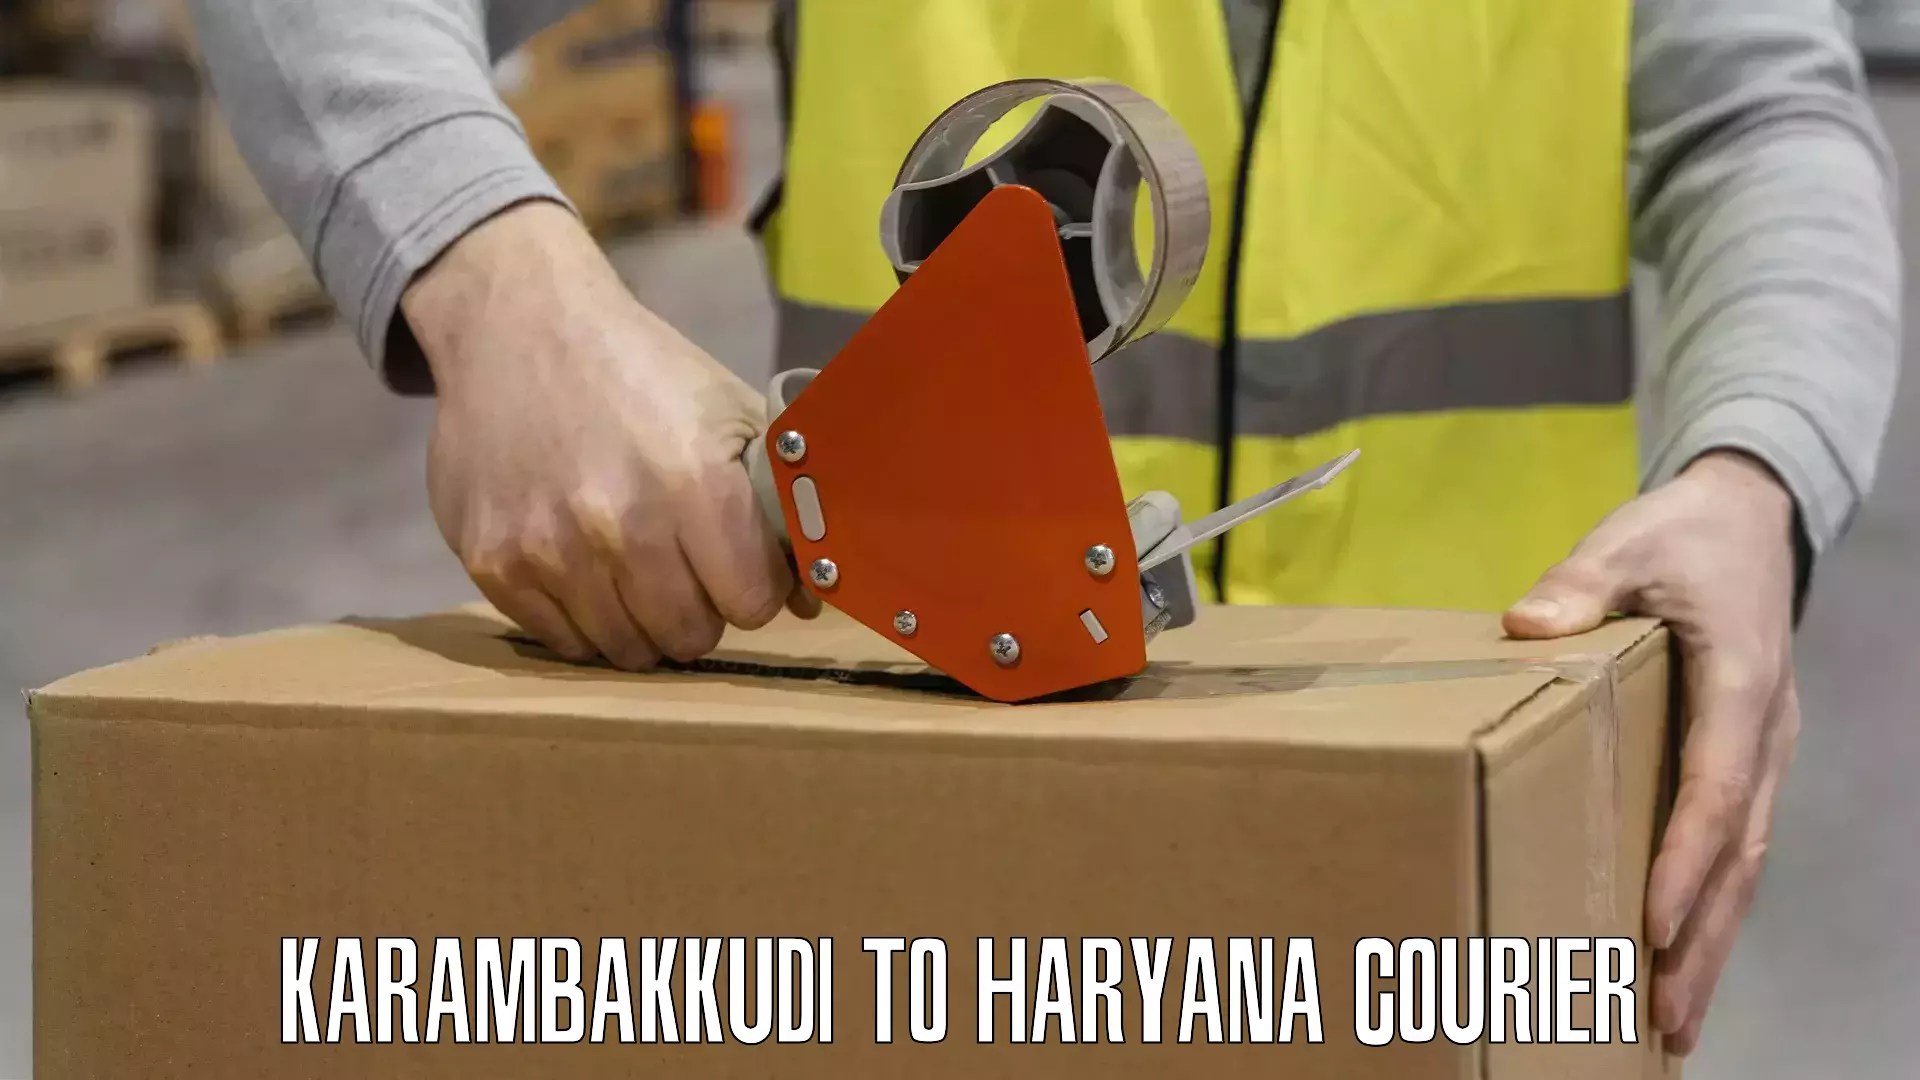 Nationwide parcel services Karambakkudi to Haryana